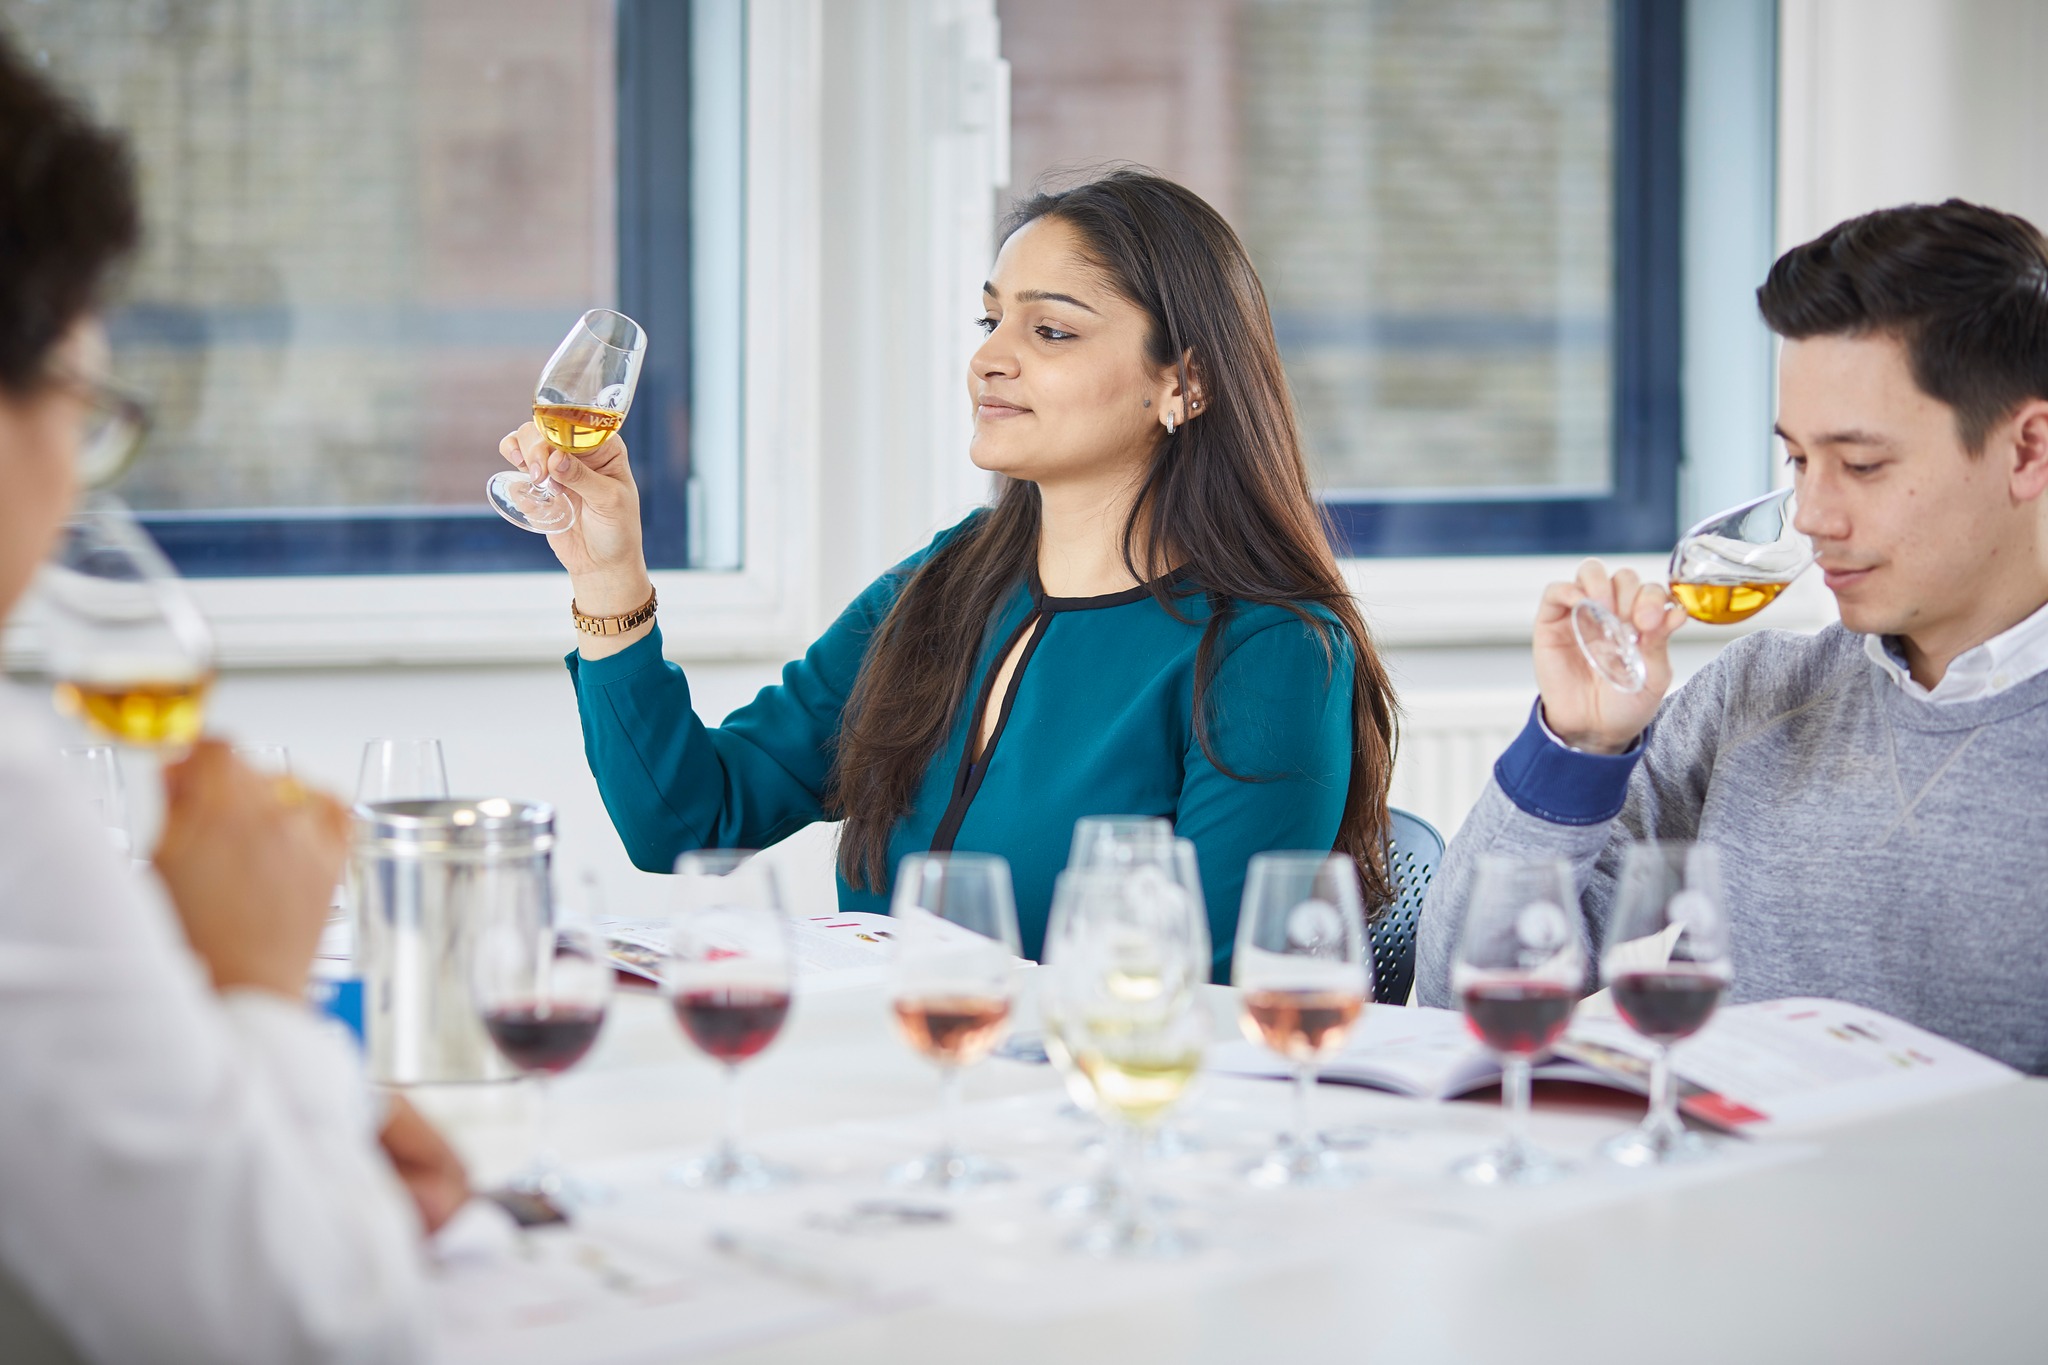 Curs de apreciere a vinurilor (Bucuresti)